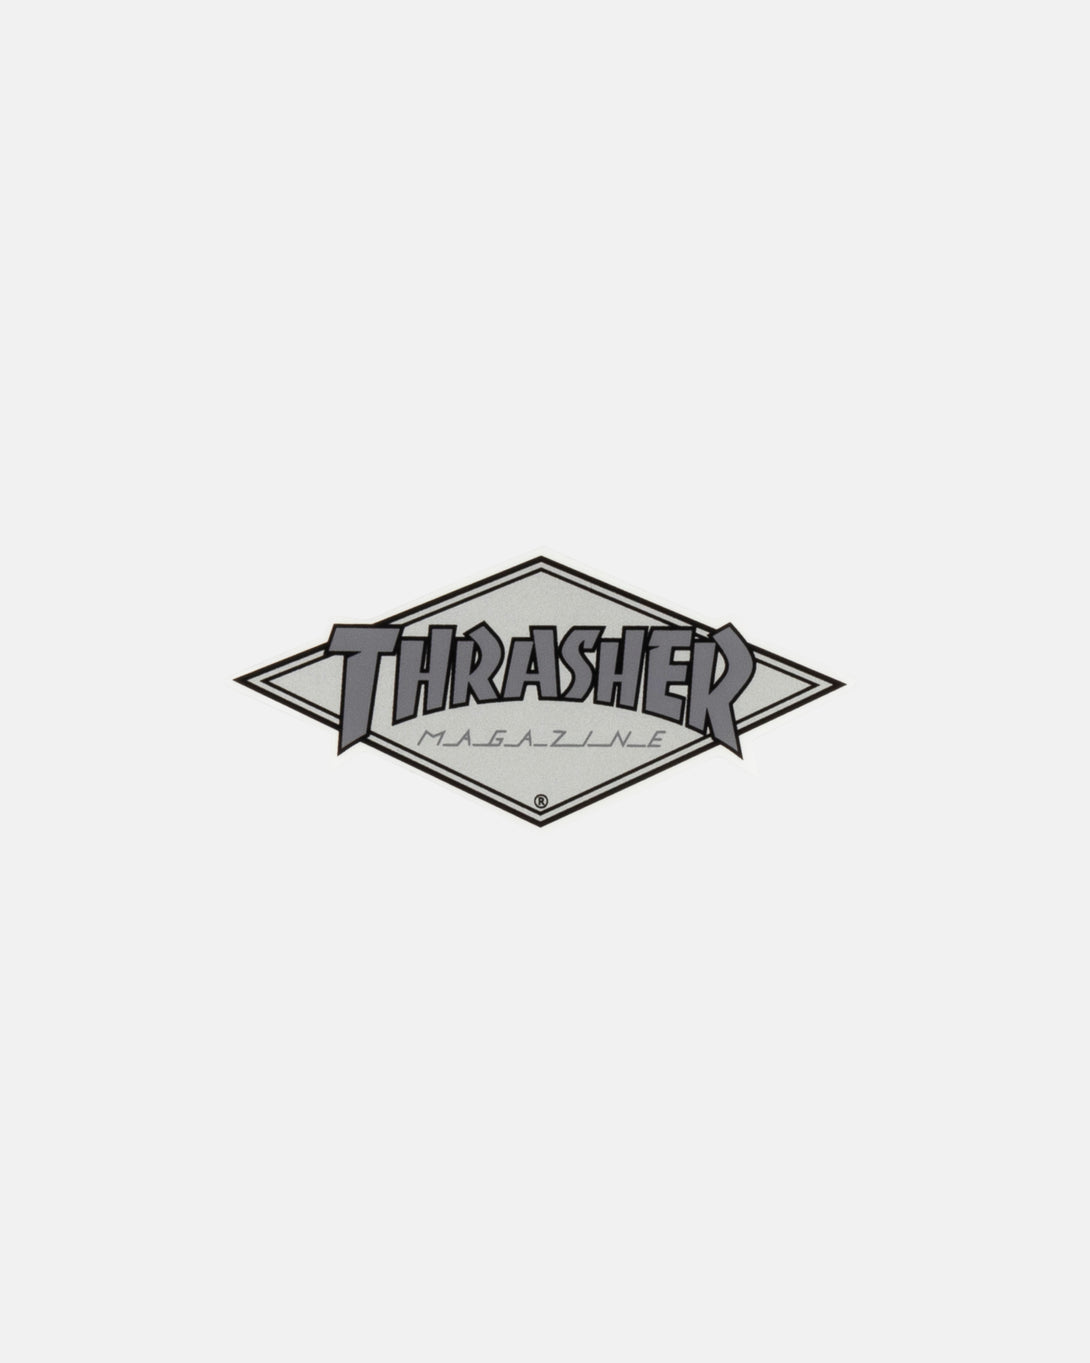 Thrasher - Die Cut Sticker - Black